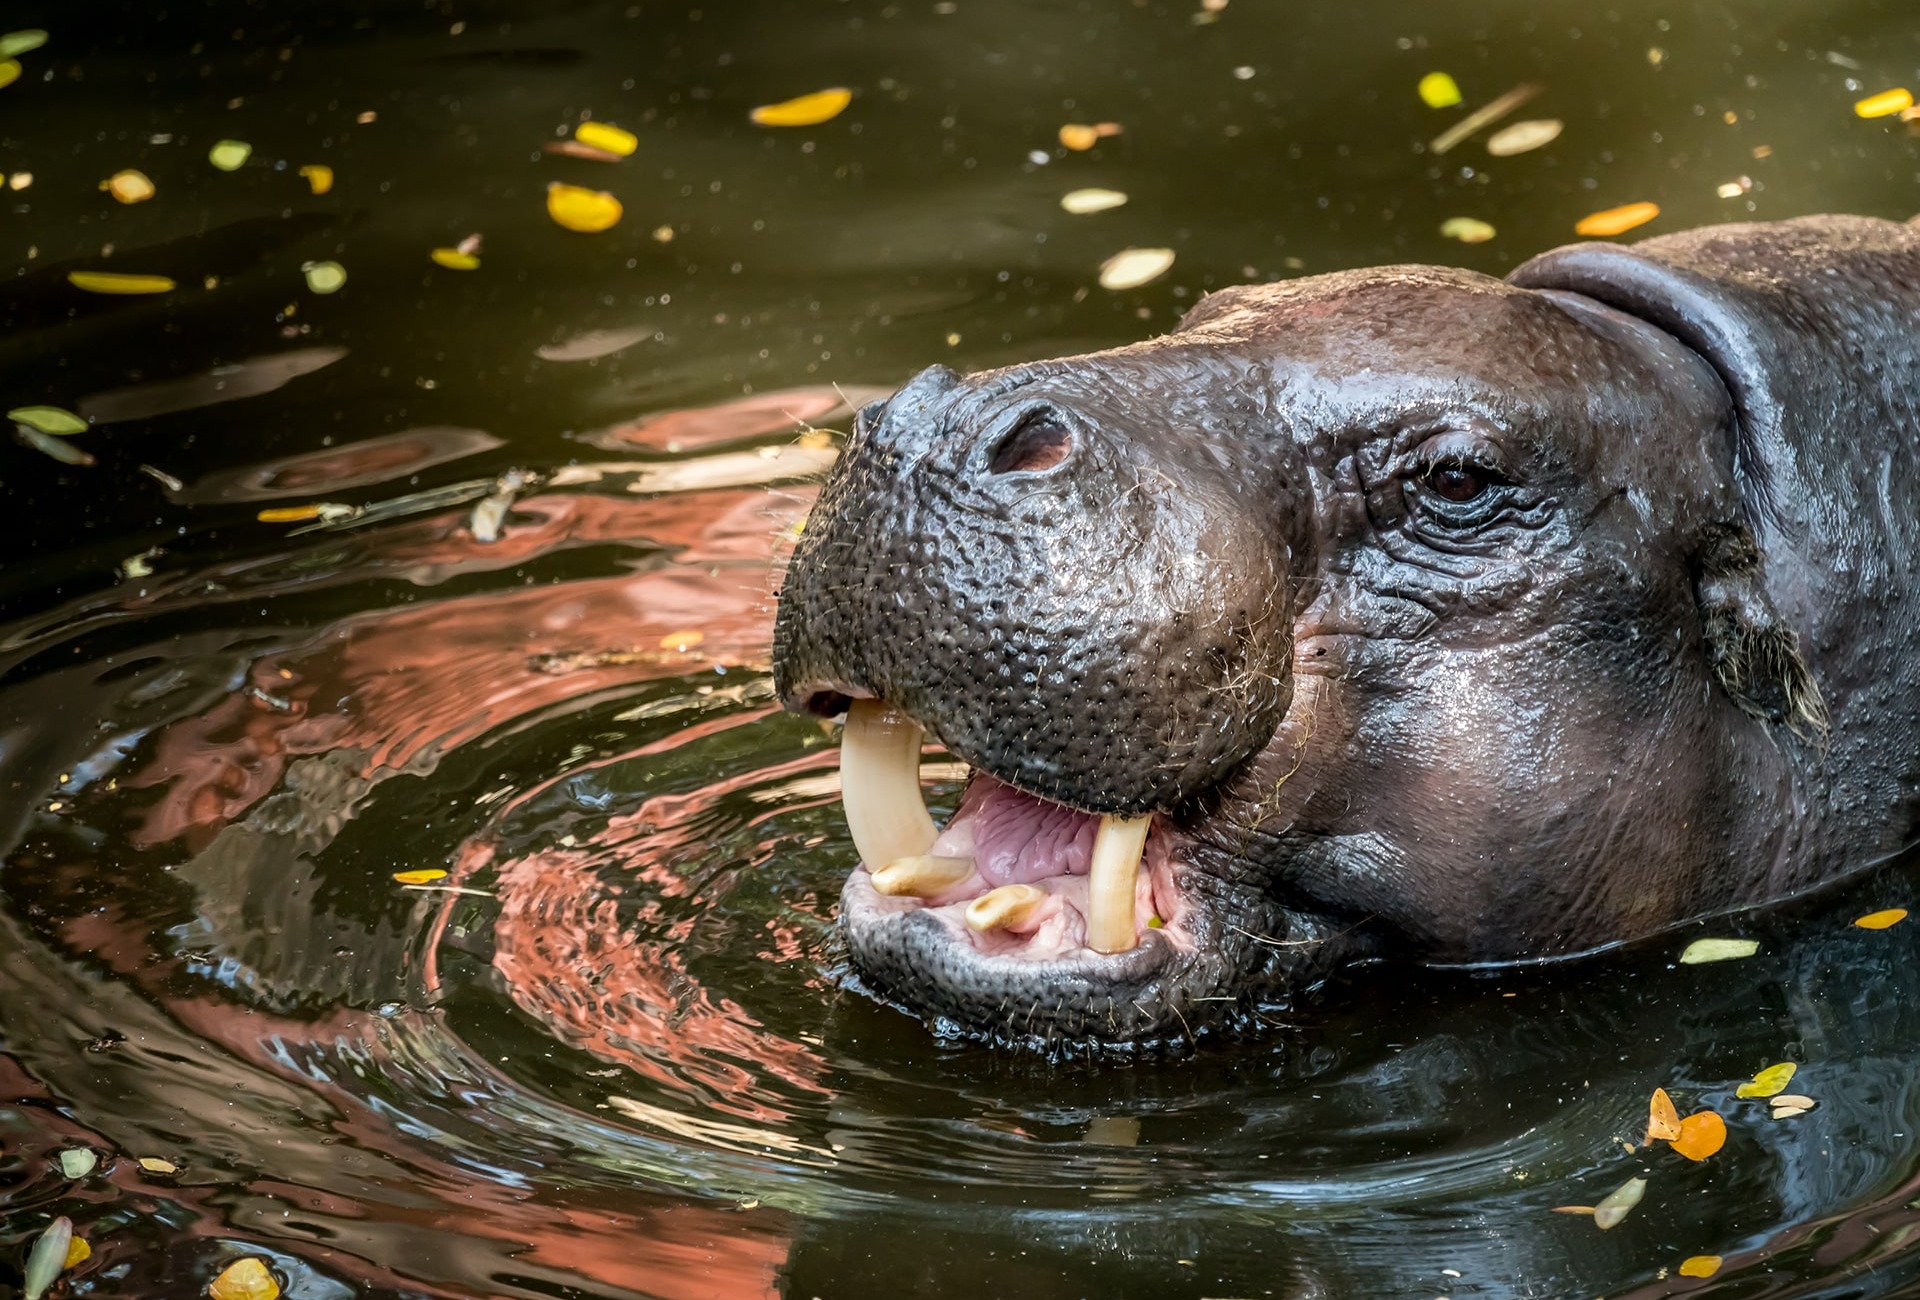 The Pygmy Hippo, by SantaGig